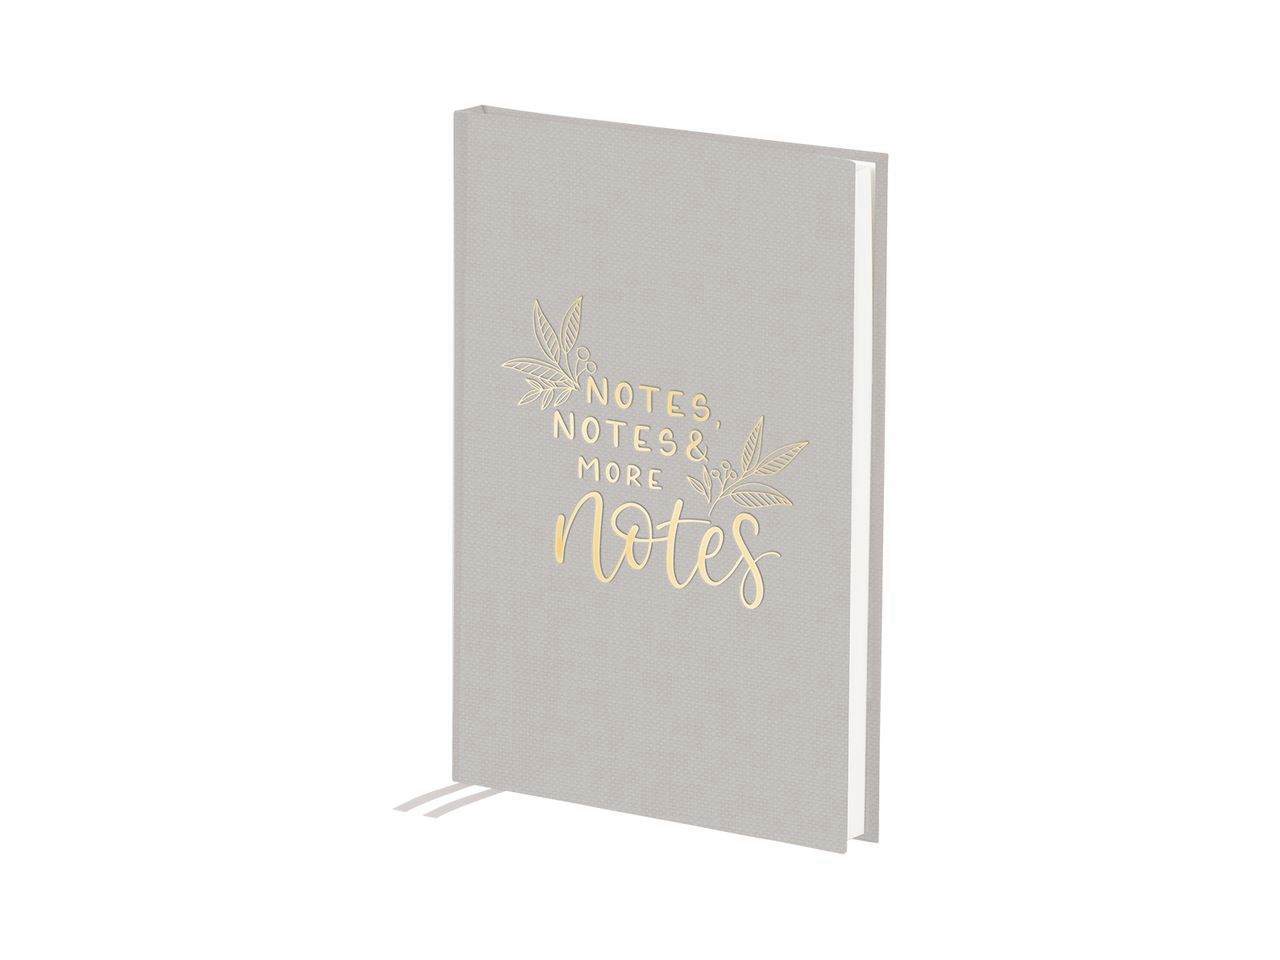 Taccuino Notes, Notes & ... con scritta in lamina d'oro, copertina in tessuto